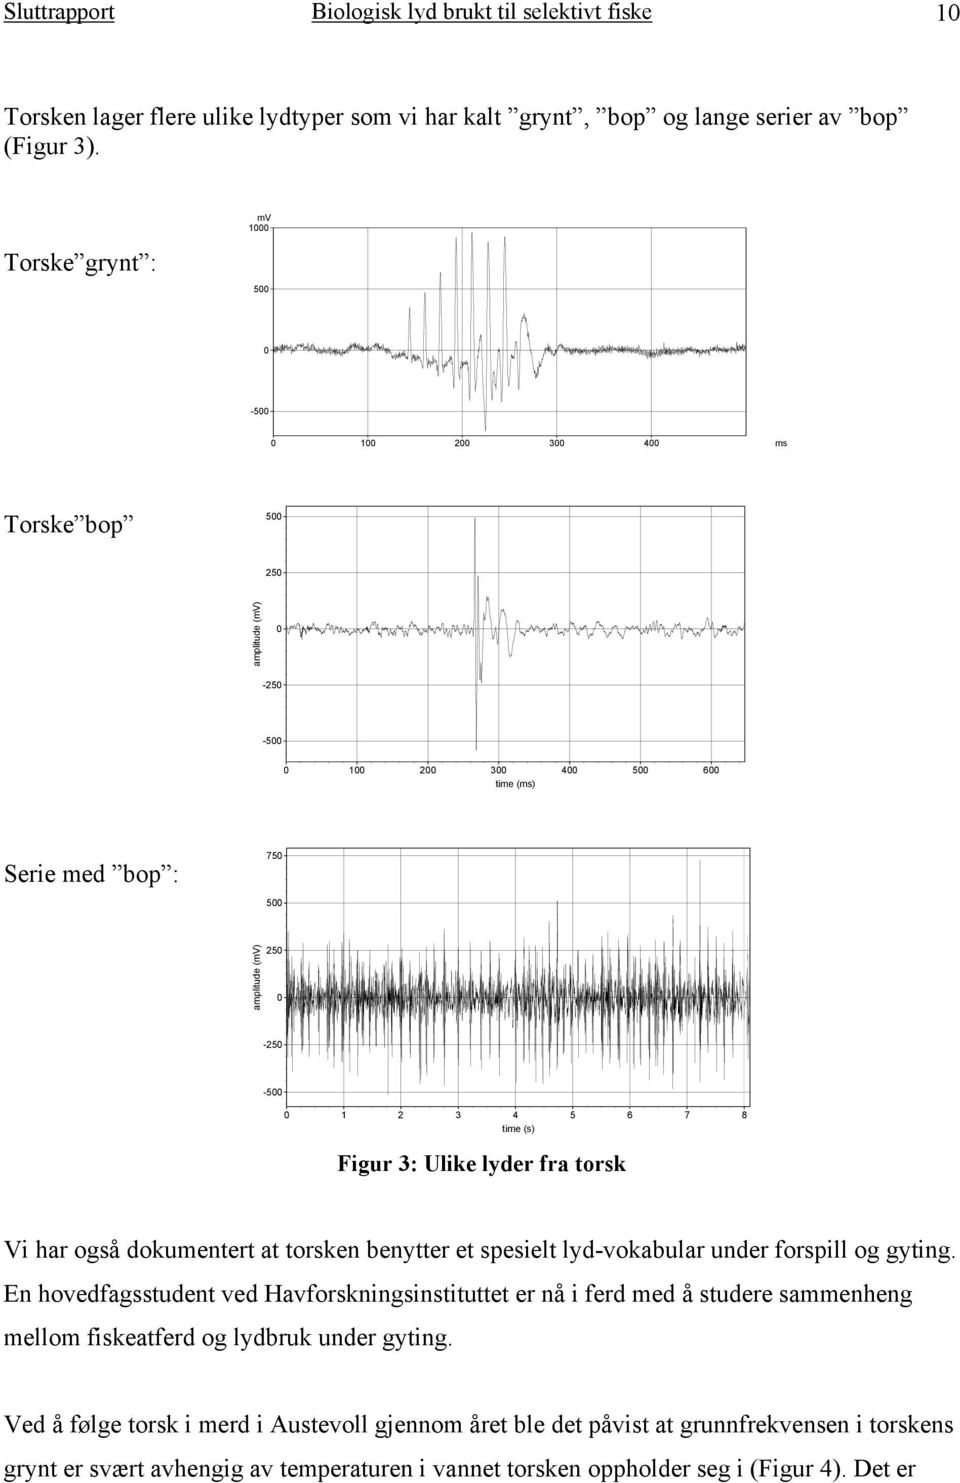 5 6 7 8 time (s) Figur 3: Ulike lyder fra torsk Vi har også dokumentert at torsken benytter et spesielt lyd-vokabular under forspill og gyting.